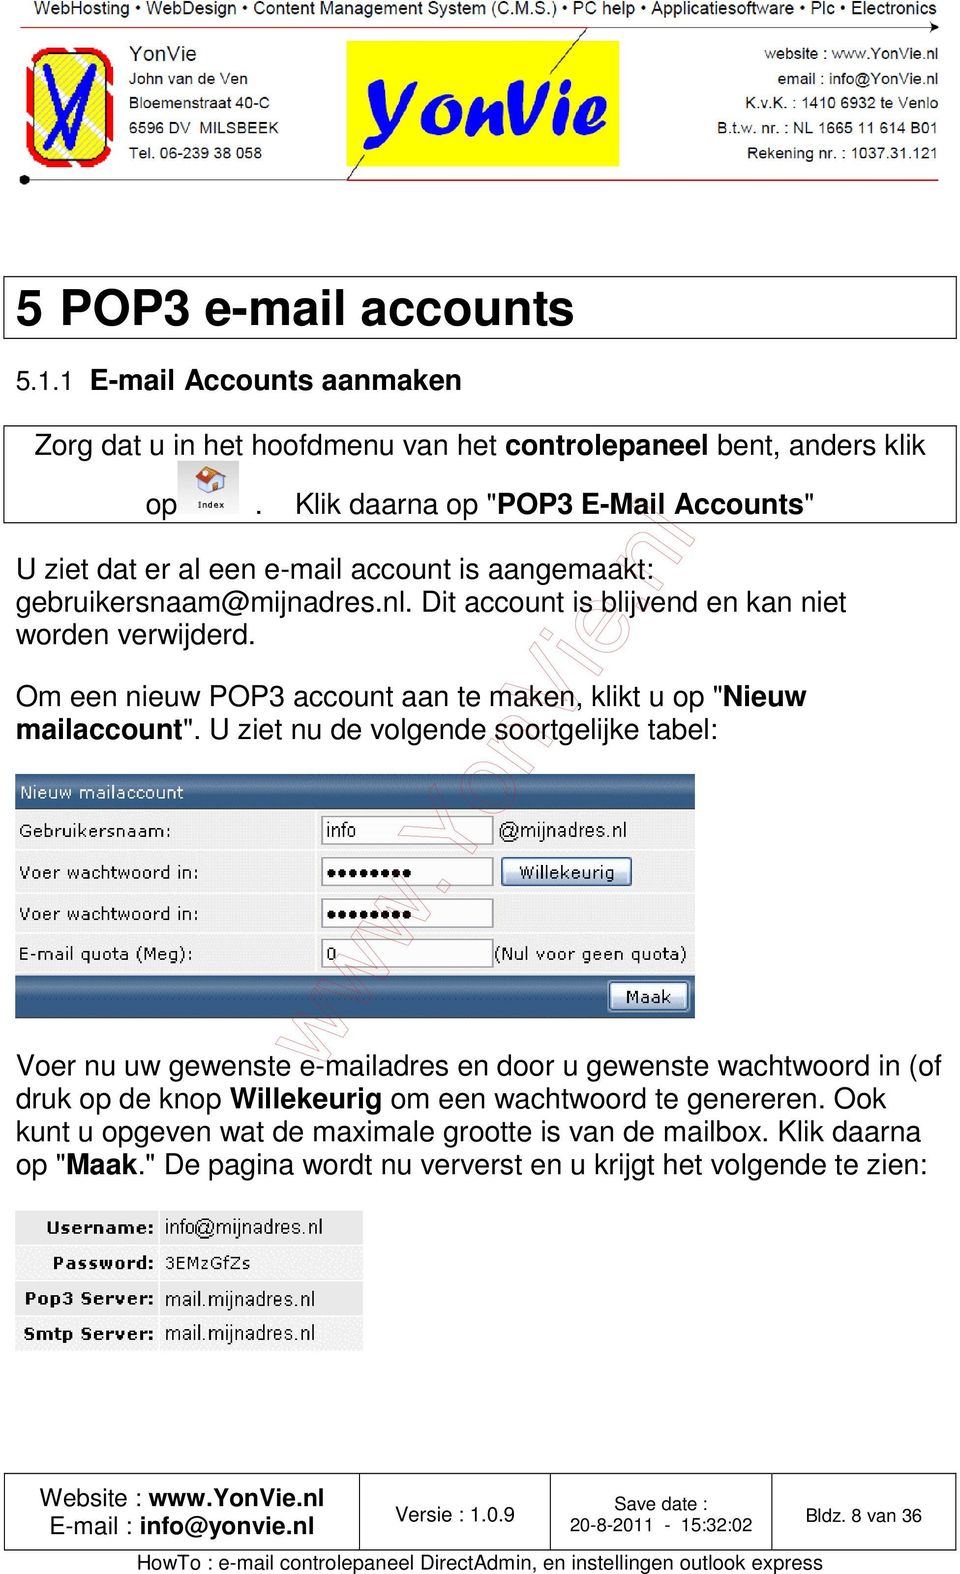 Om een nieuw POP3 account aan te maken, klikt u op "Nieuw mailaccount".